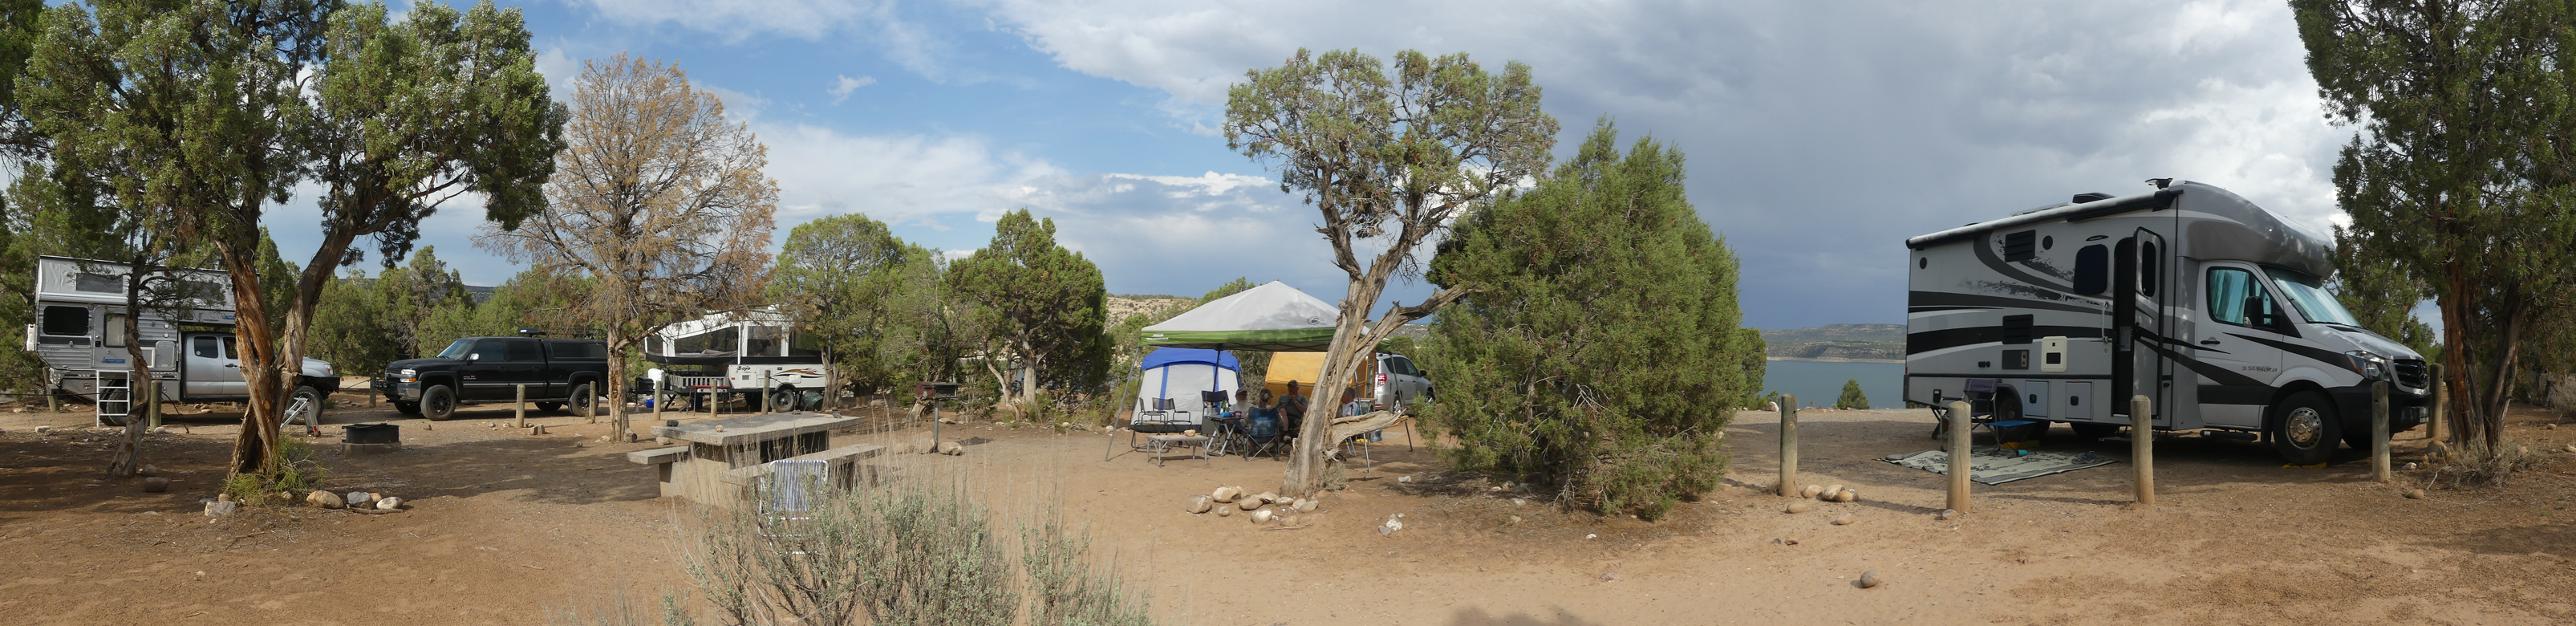 camping rigs at Navajo Lake